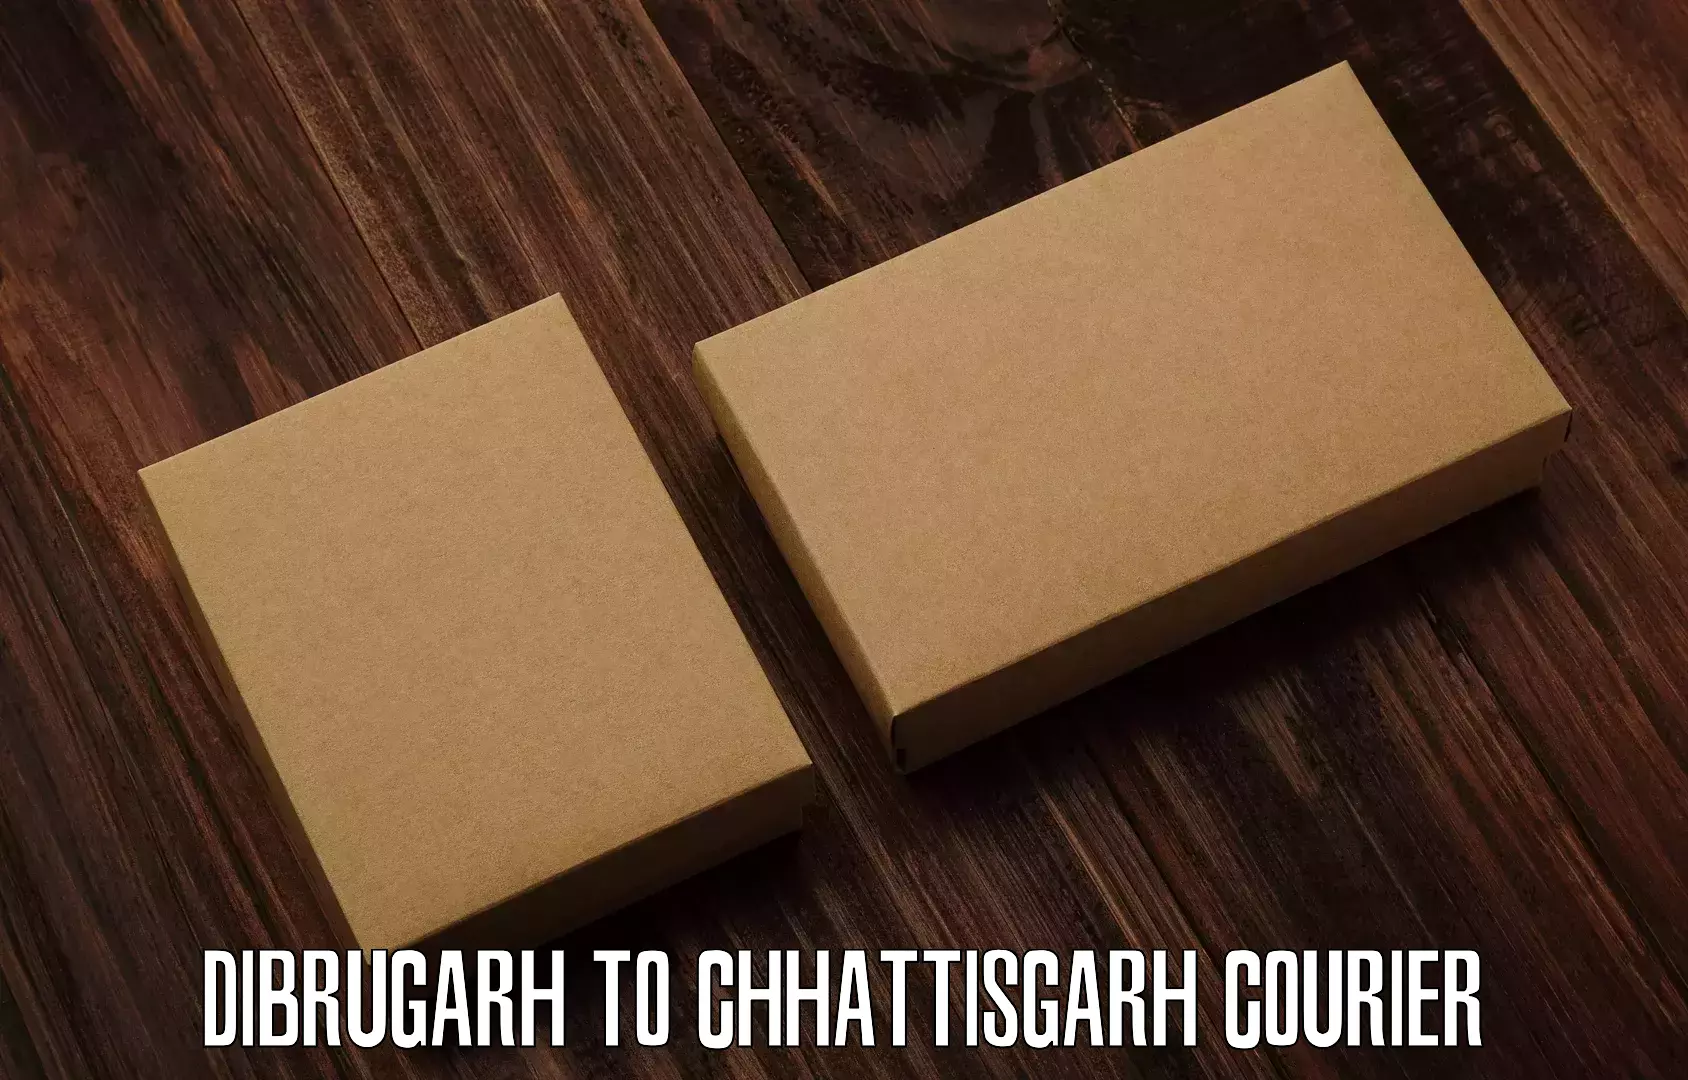 Speedy delivery service Dibrugarh to Chhattisgarh